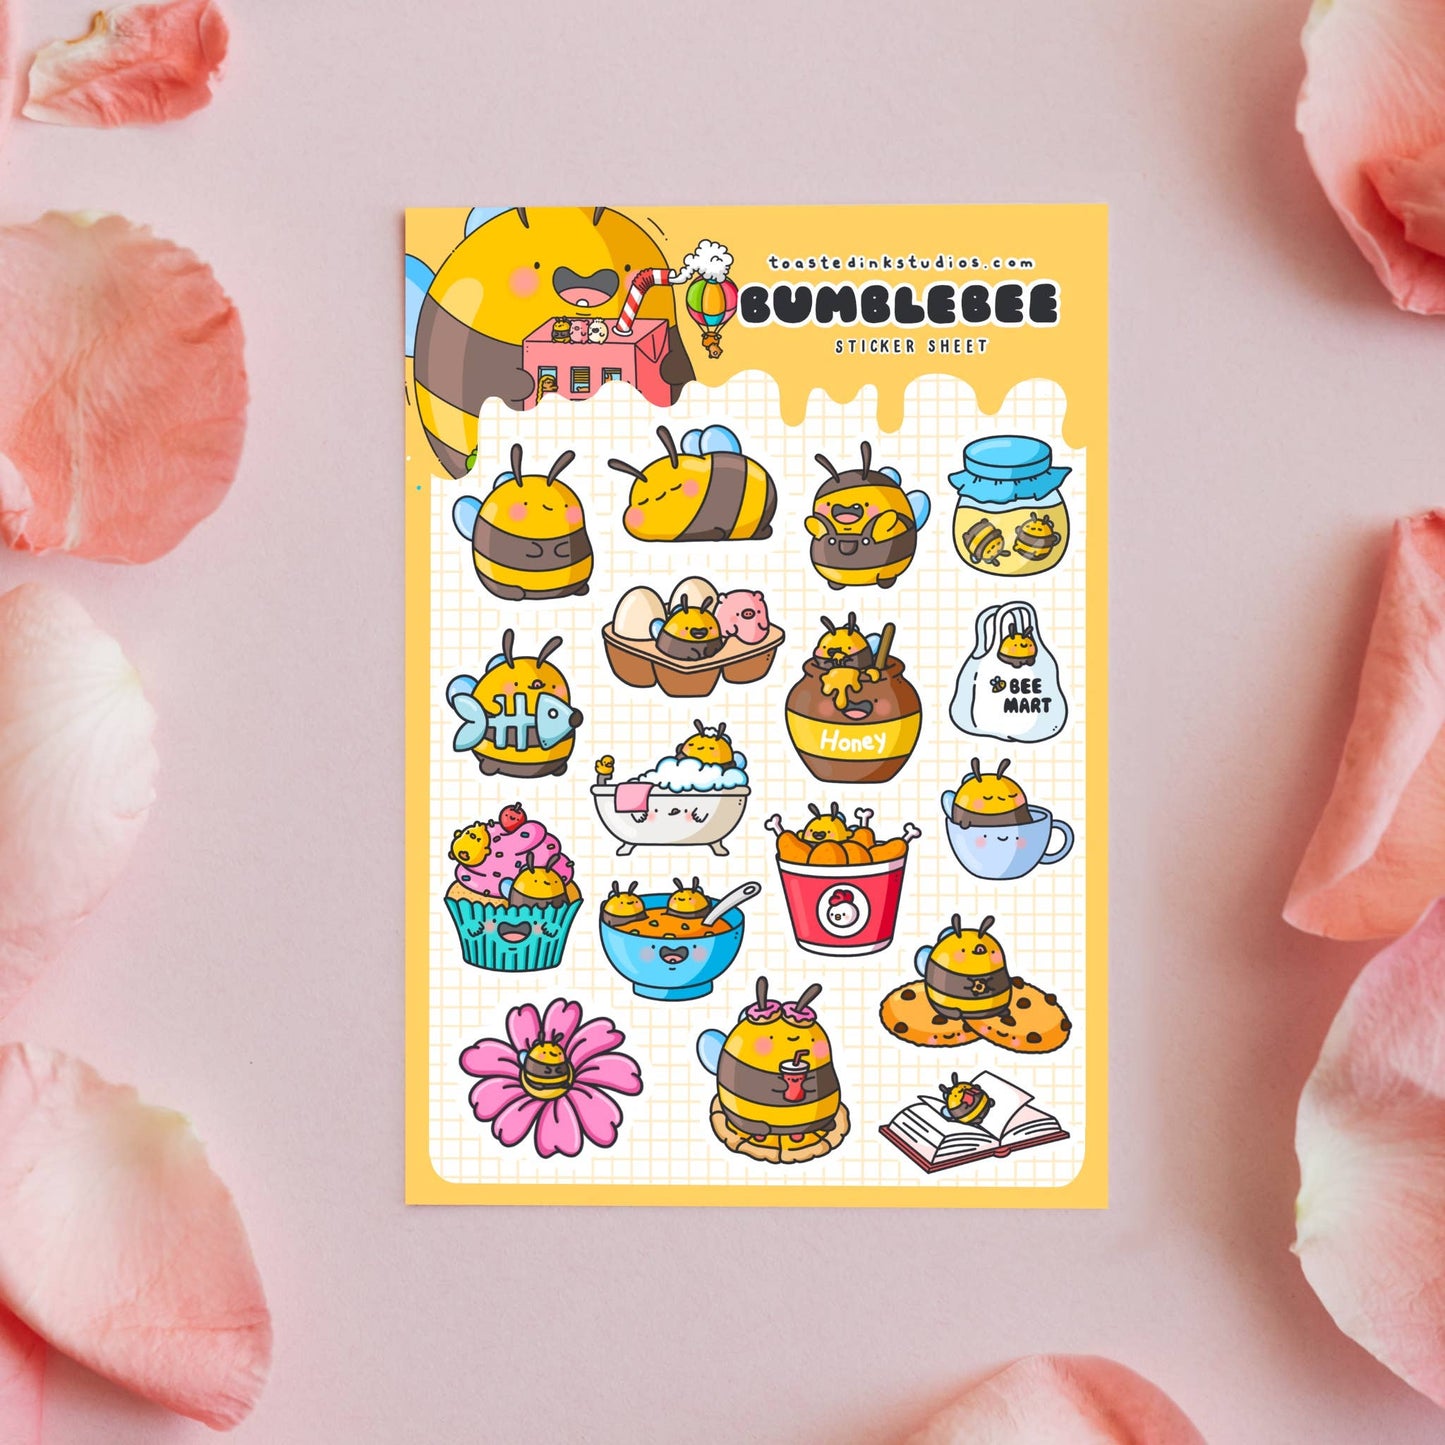 Toastedink - Bumblebee A5 Sticker Sheet